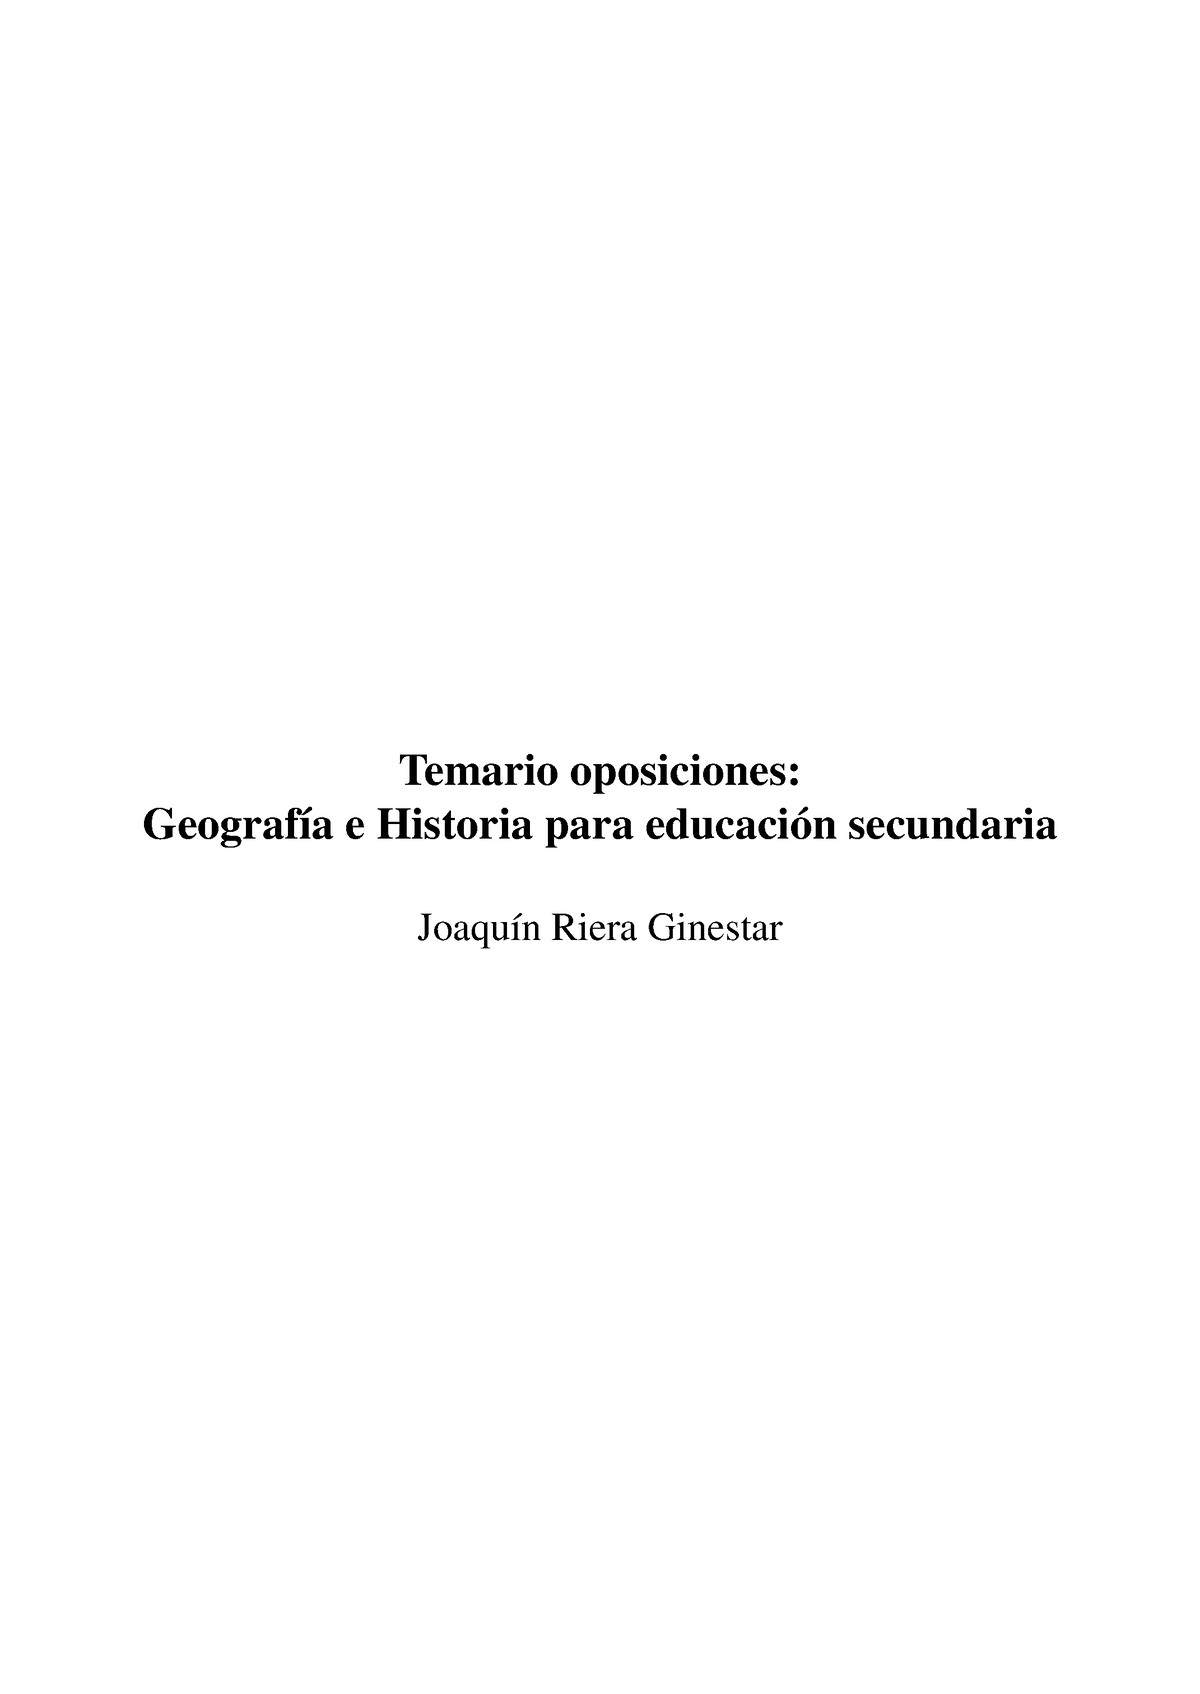 Riera Ginestar Primeros Temas Temario Oposiciones Geografía E Historia Para Educación